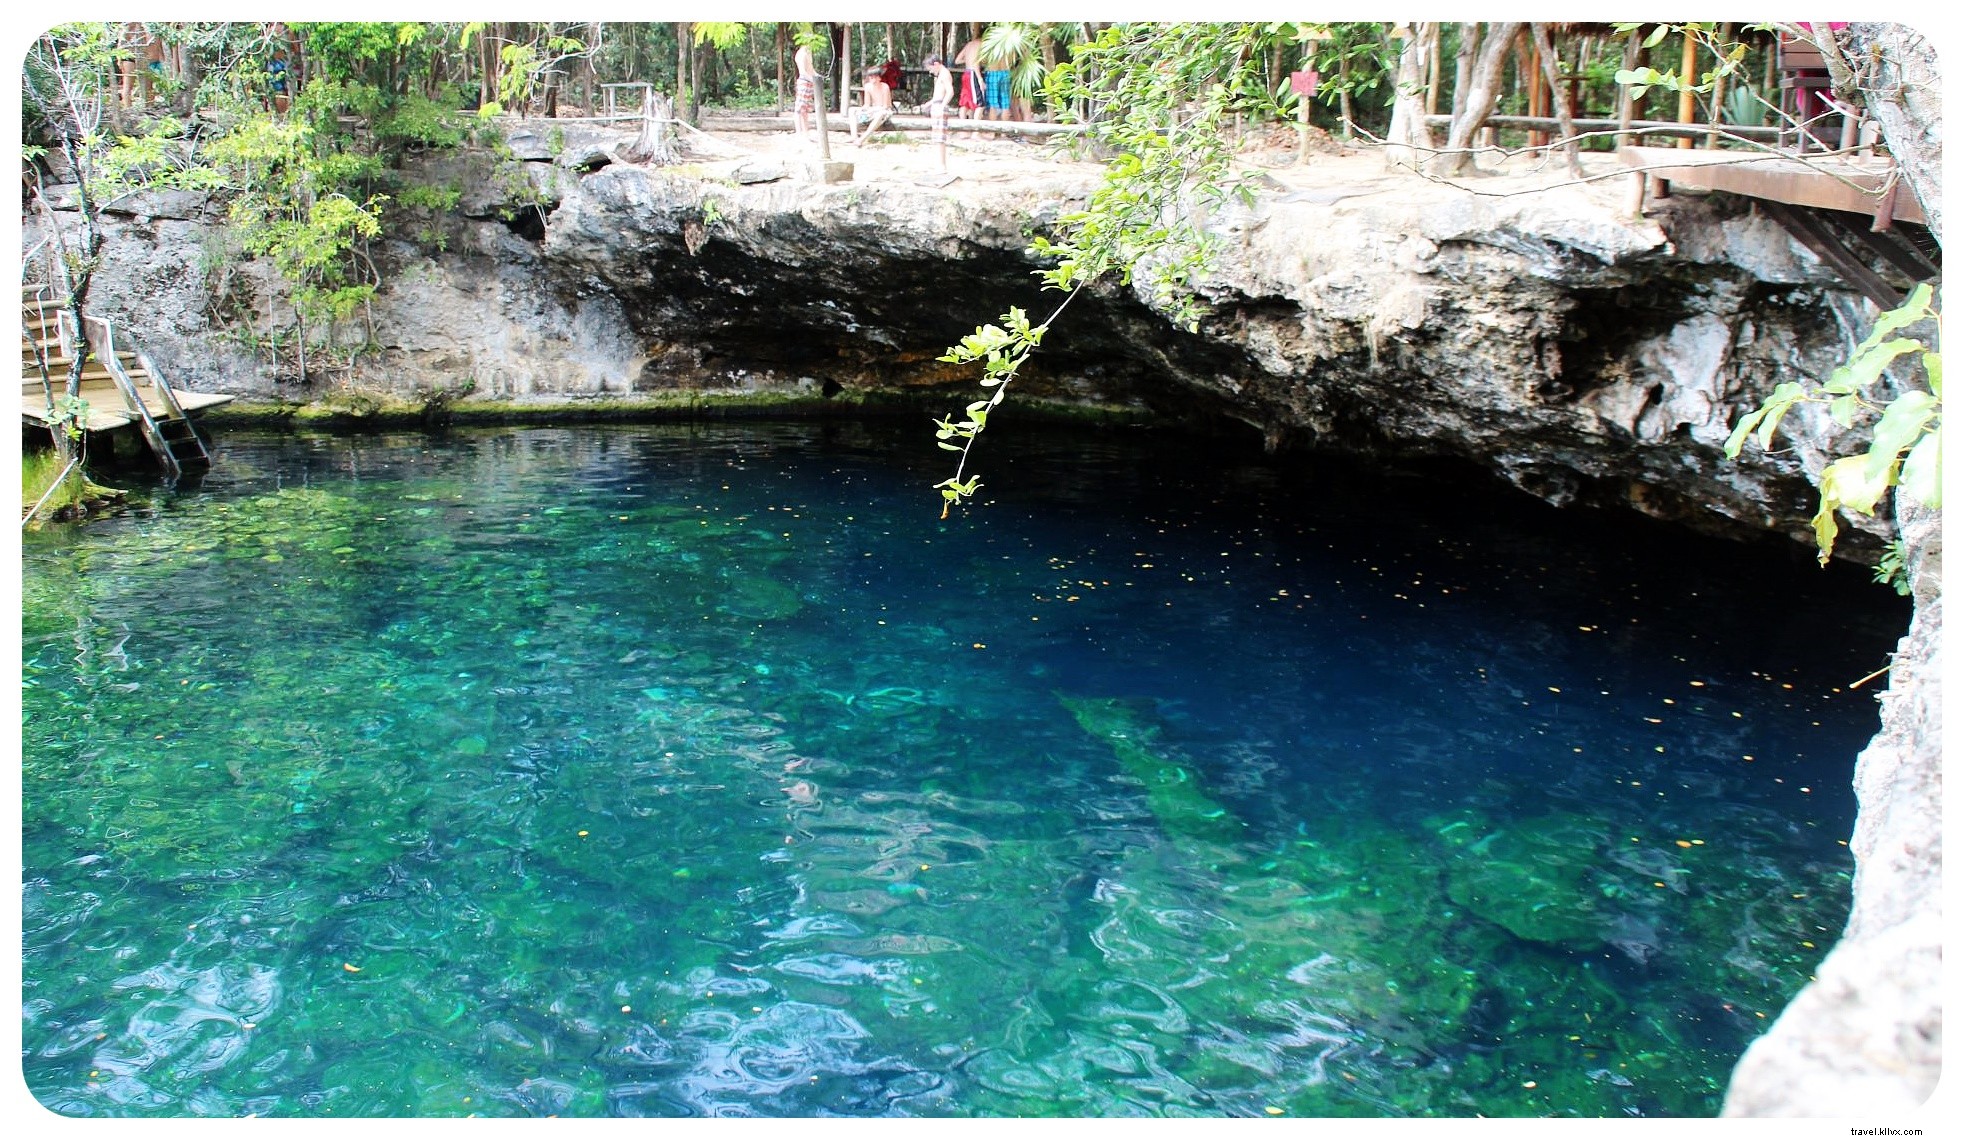 Cenotes, Playas y ruinas mayas:un viaje por carretera a Yucatán con tacos